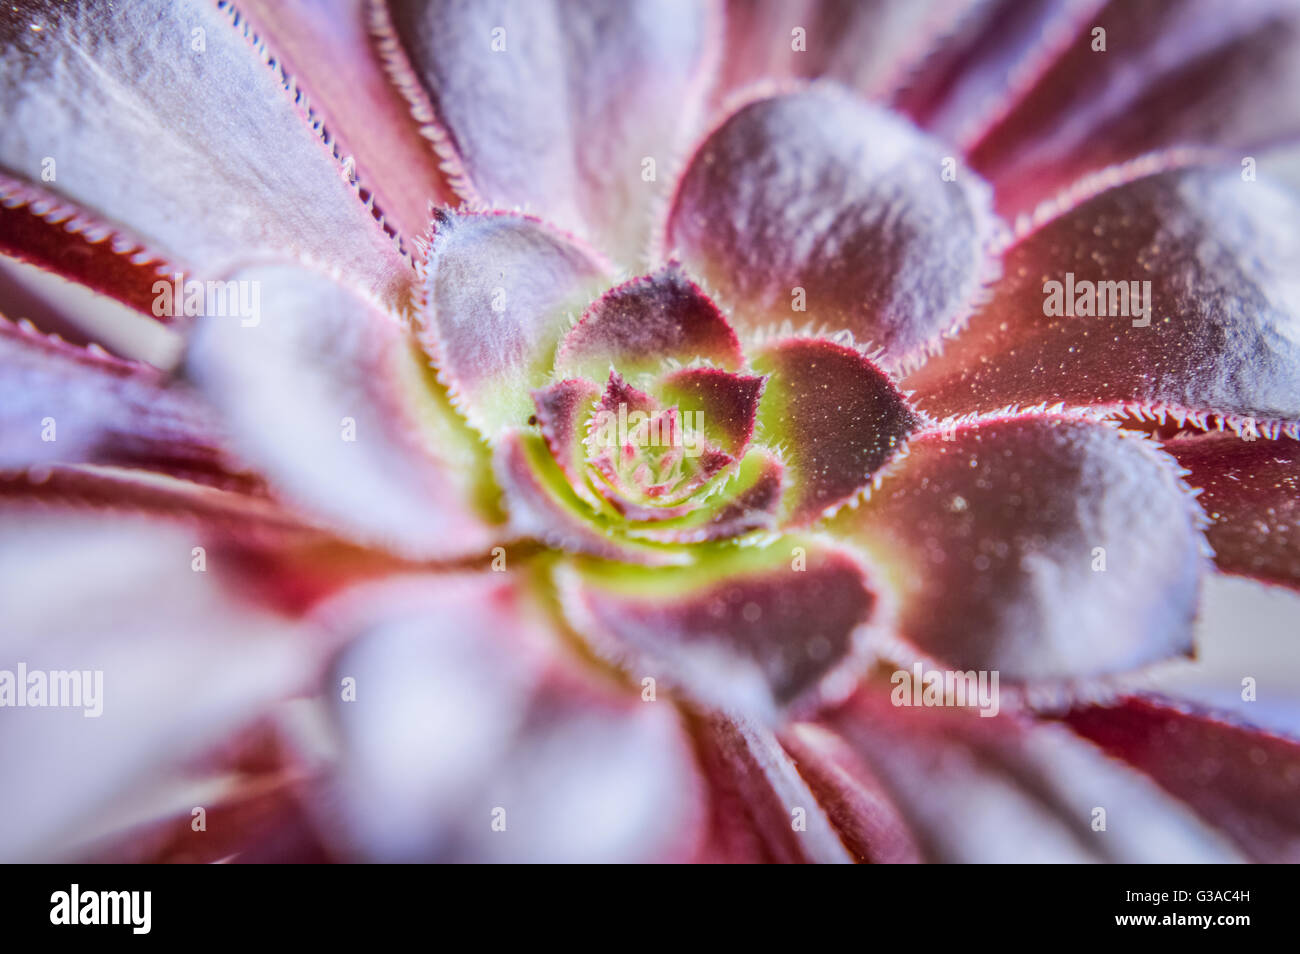 Aeonium arboreum 'Atropurpureum' macro close up Stock Photo